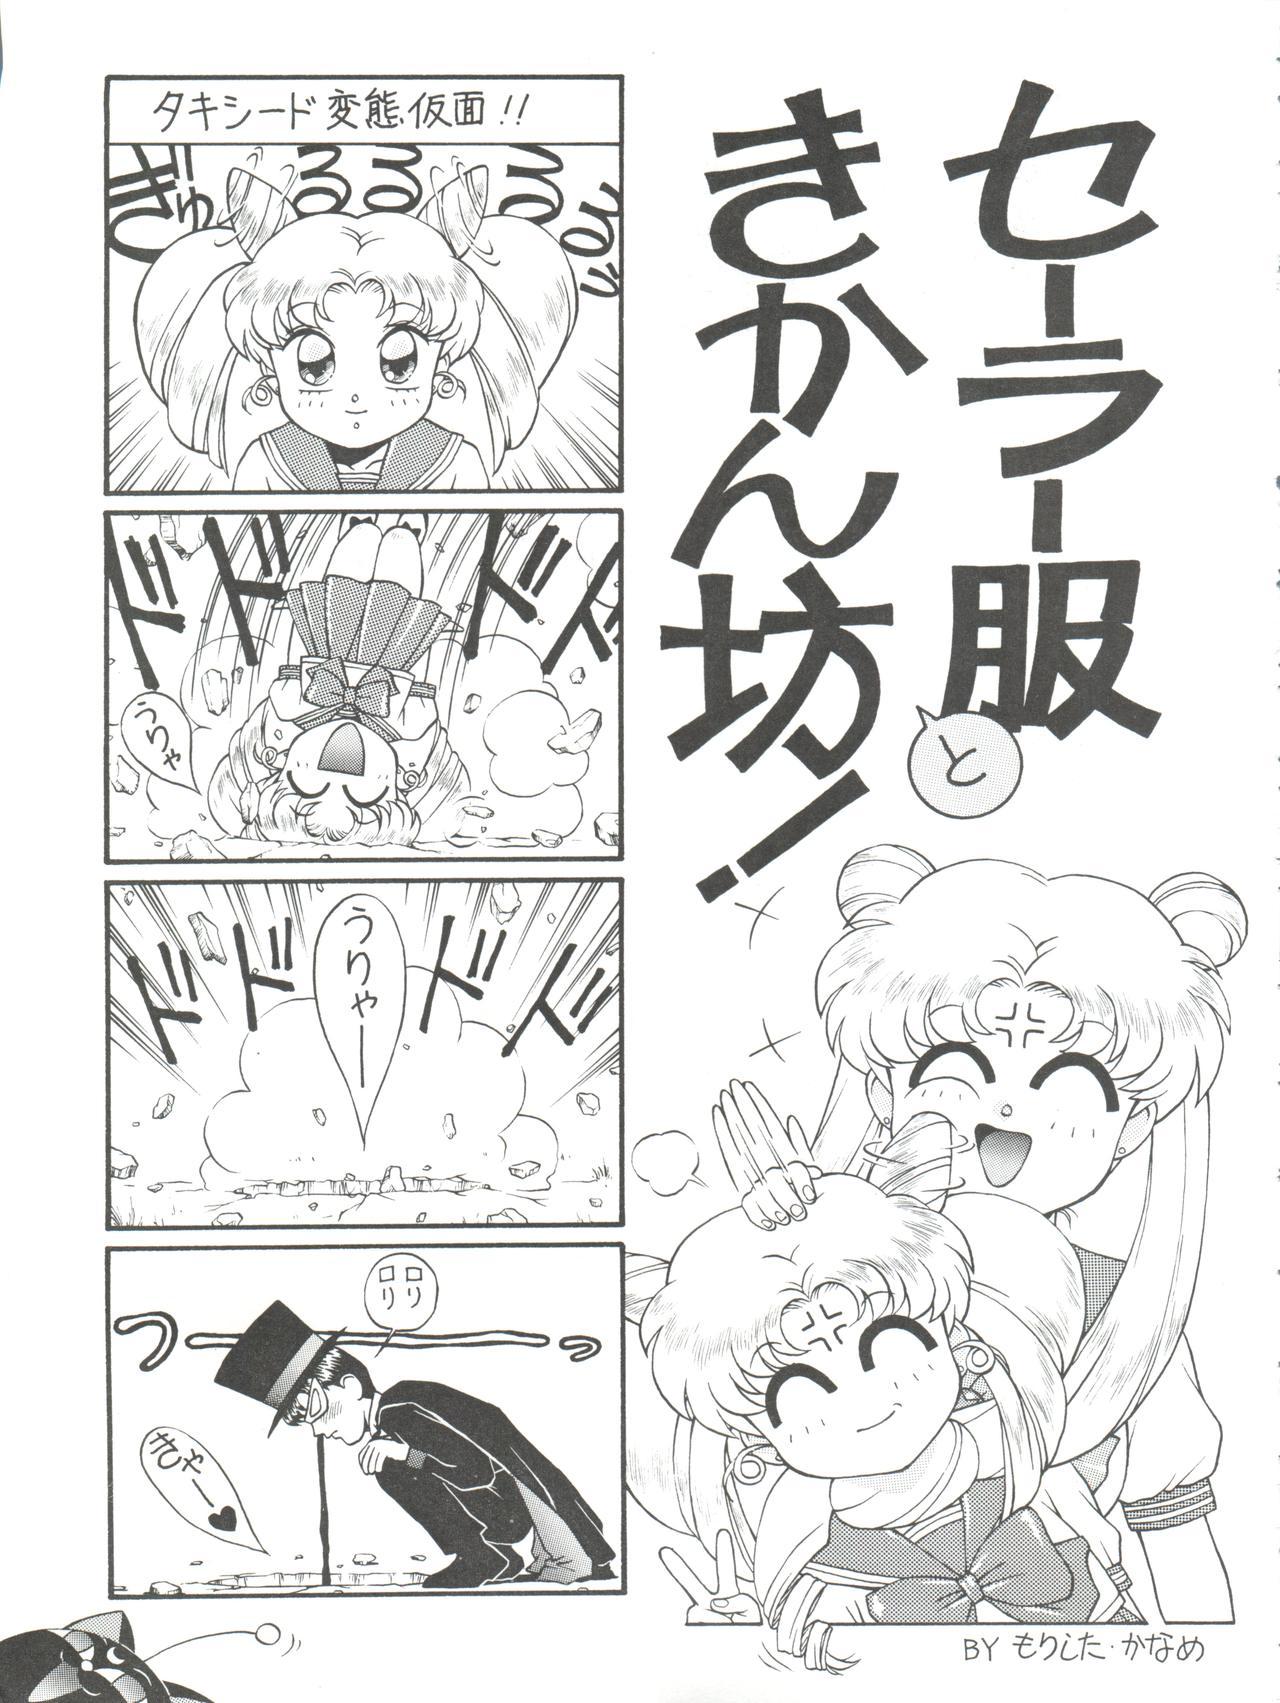 Sexy Girl Sex NANIWA-YA FINAL DRESS UP! - Sailor moon Slayers Hime chans ribbon Ng knight lamune and 40 Brave express might gaine Porno - Page 11